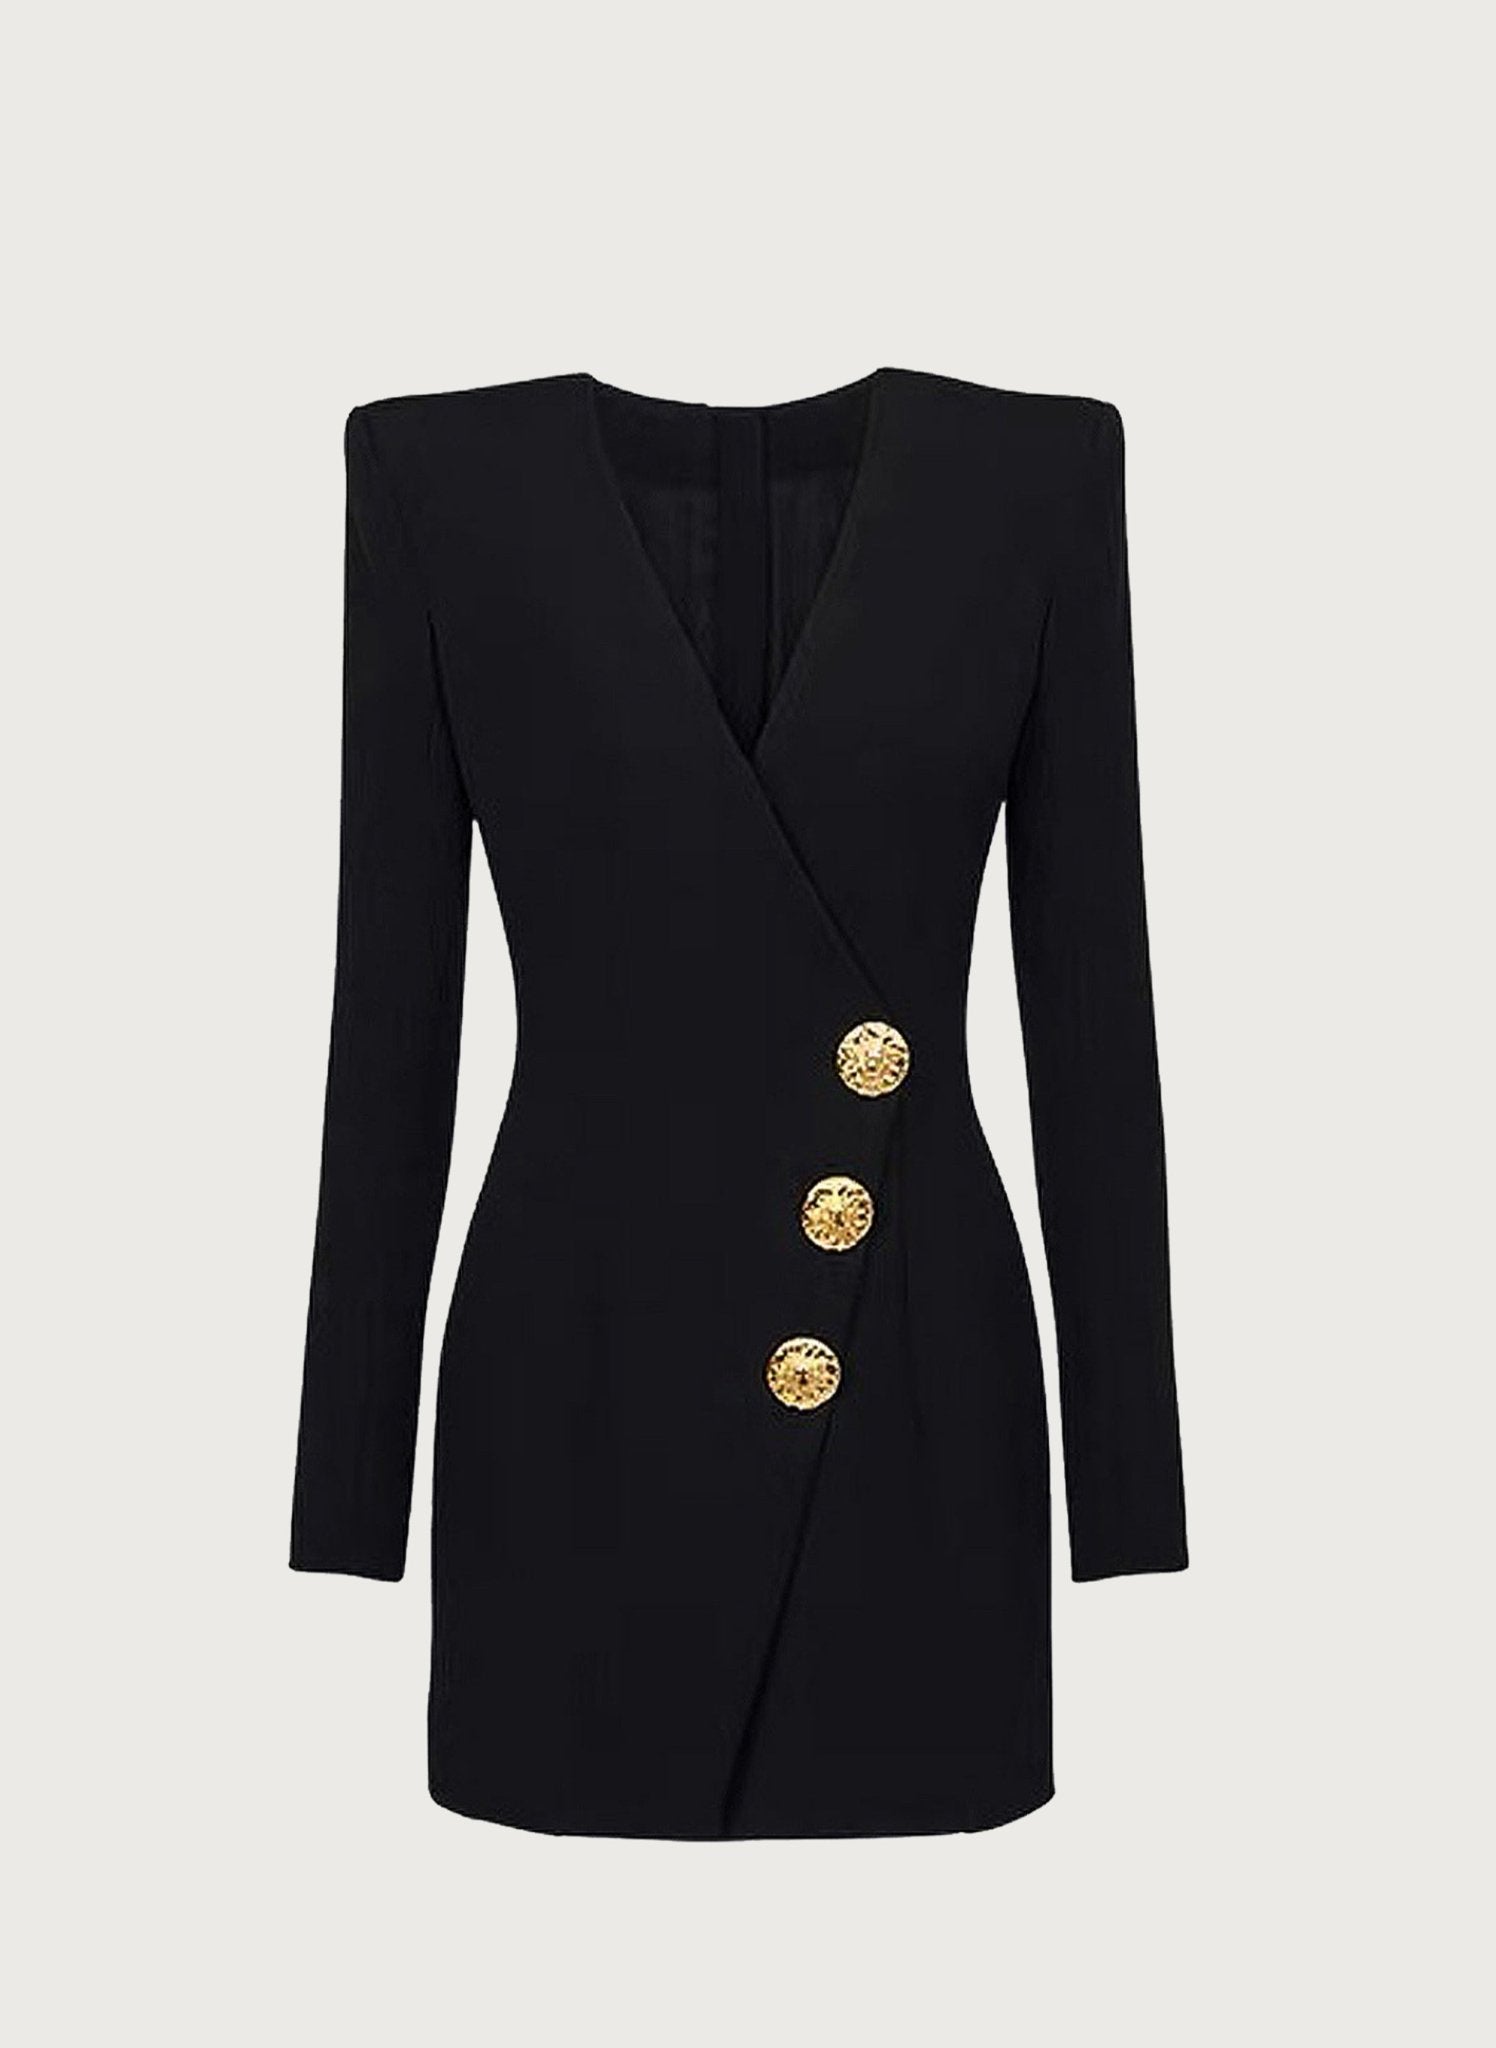 Classic Noir Black Dress - Veronica Luxe-Dress